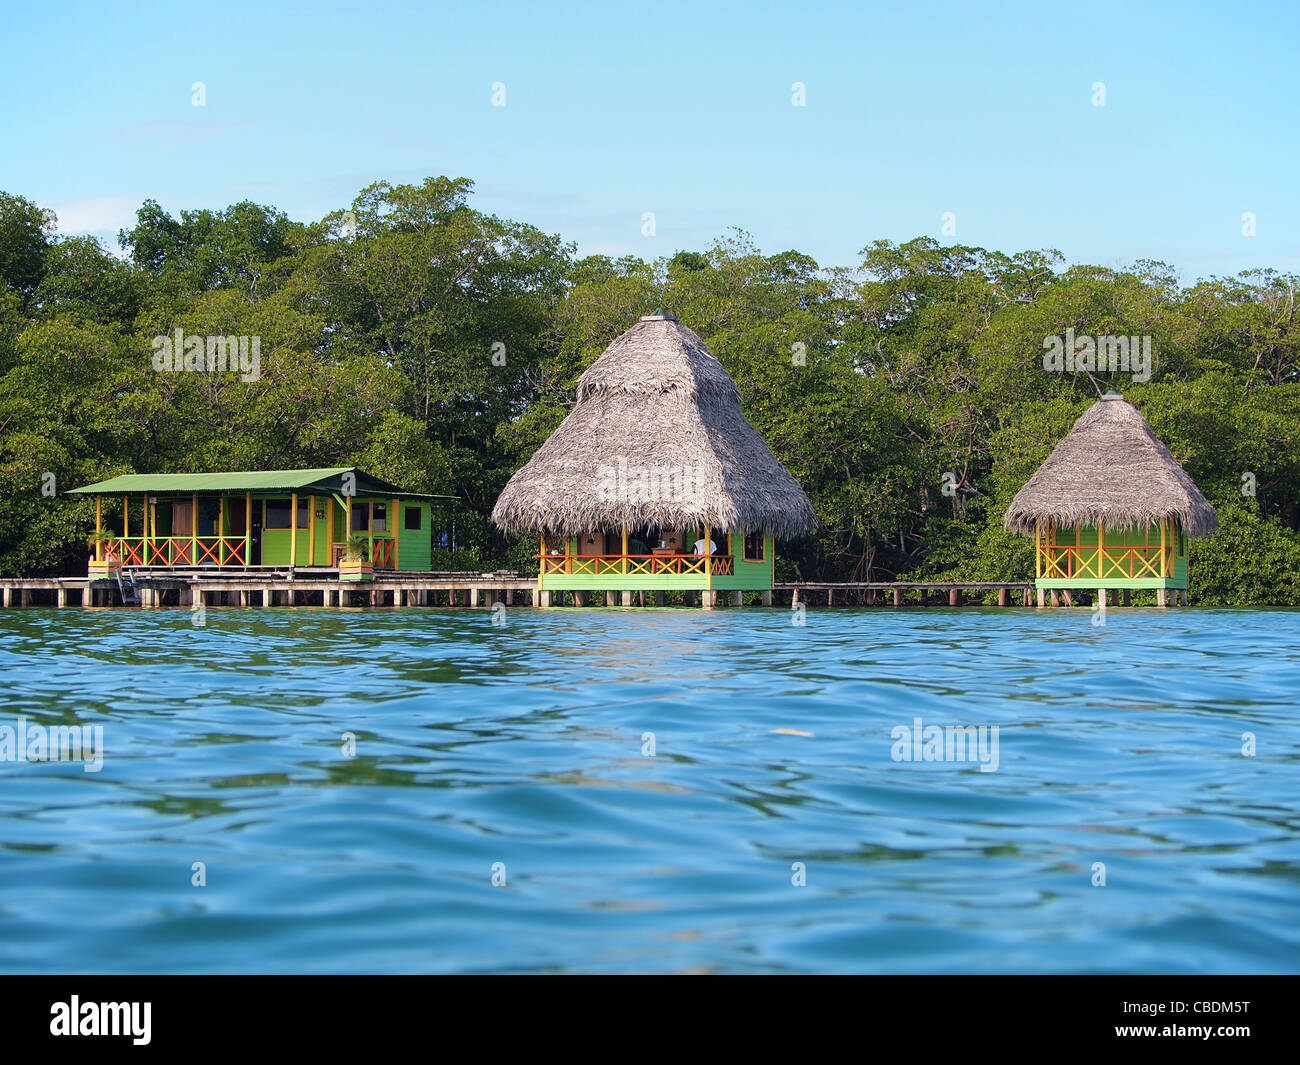 Tropical bungalows sull'acqua con vegetazione lussureggiante, Costa Caraibica di Panama, Bocas del Toro, America Centrale Foto Stock